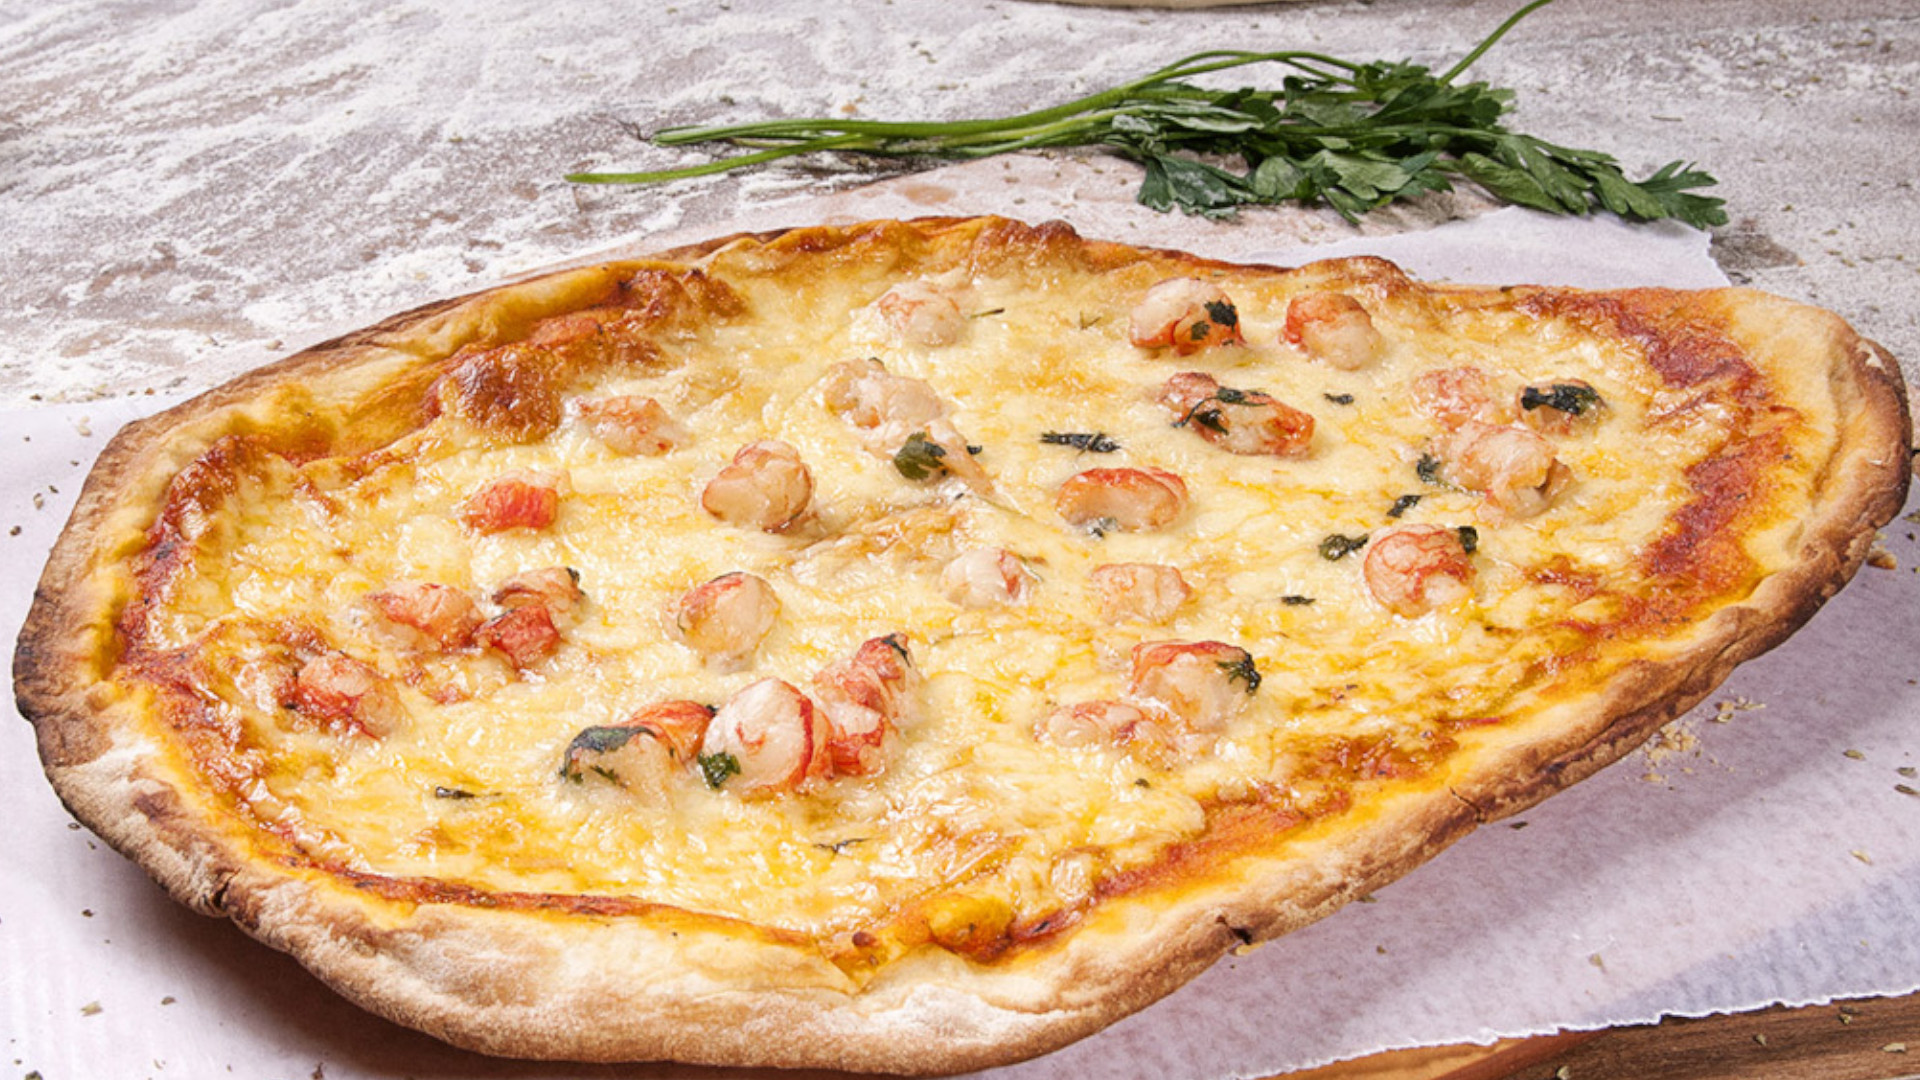 Cómo cocinar pizza a la parrilla?: Receta fácil para preparar la masa para  hacer una rica pizza casera a la parrilla. Te contamos como hacer la salsa  | y variedades de pizzas